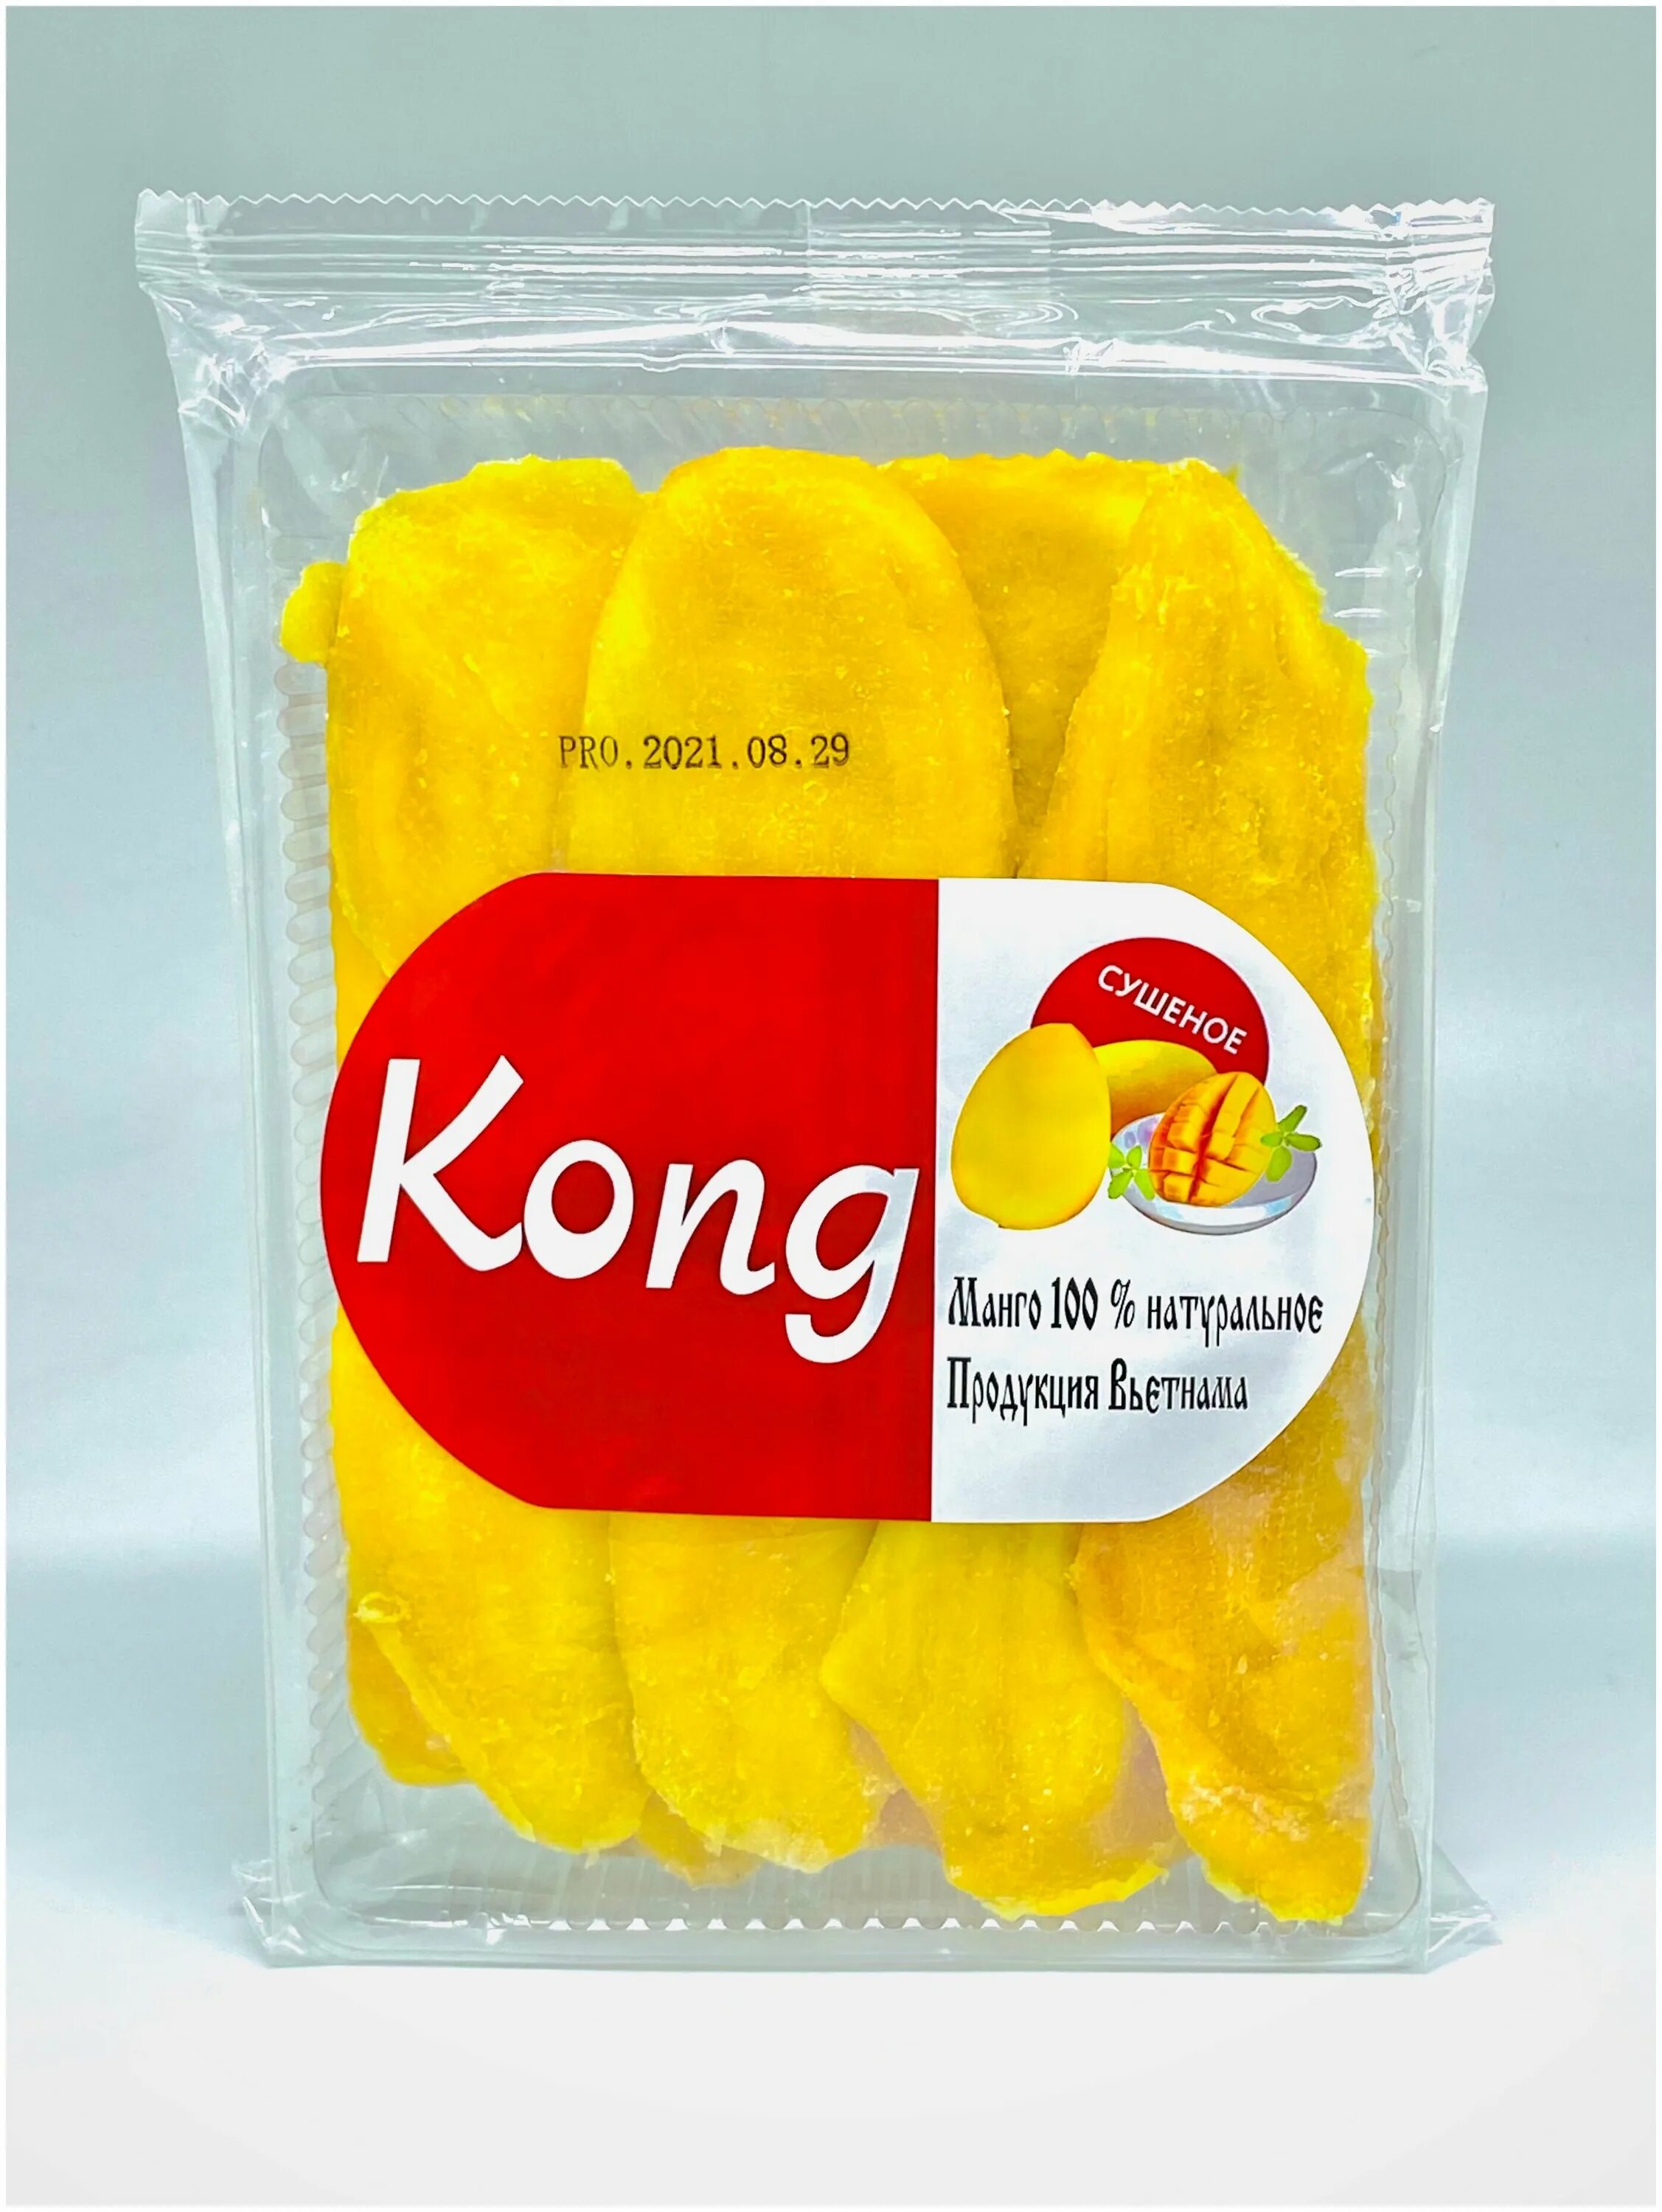 Сколько стоит кг манго. Манго сушеное Конг. Манго Kong 500г. Манго сушеное Конг 500 гр. Манго натуральное сушеное 500 г.